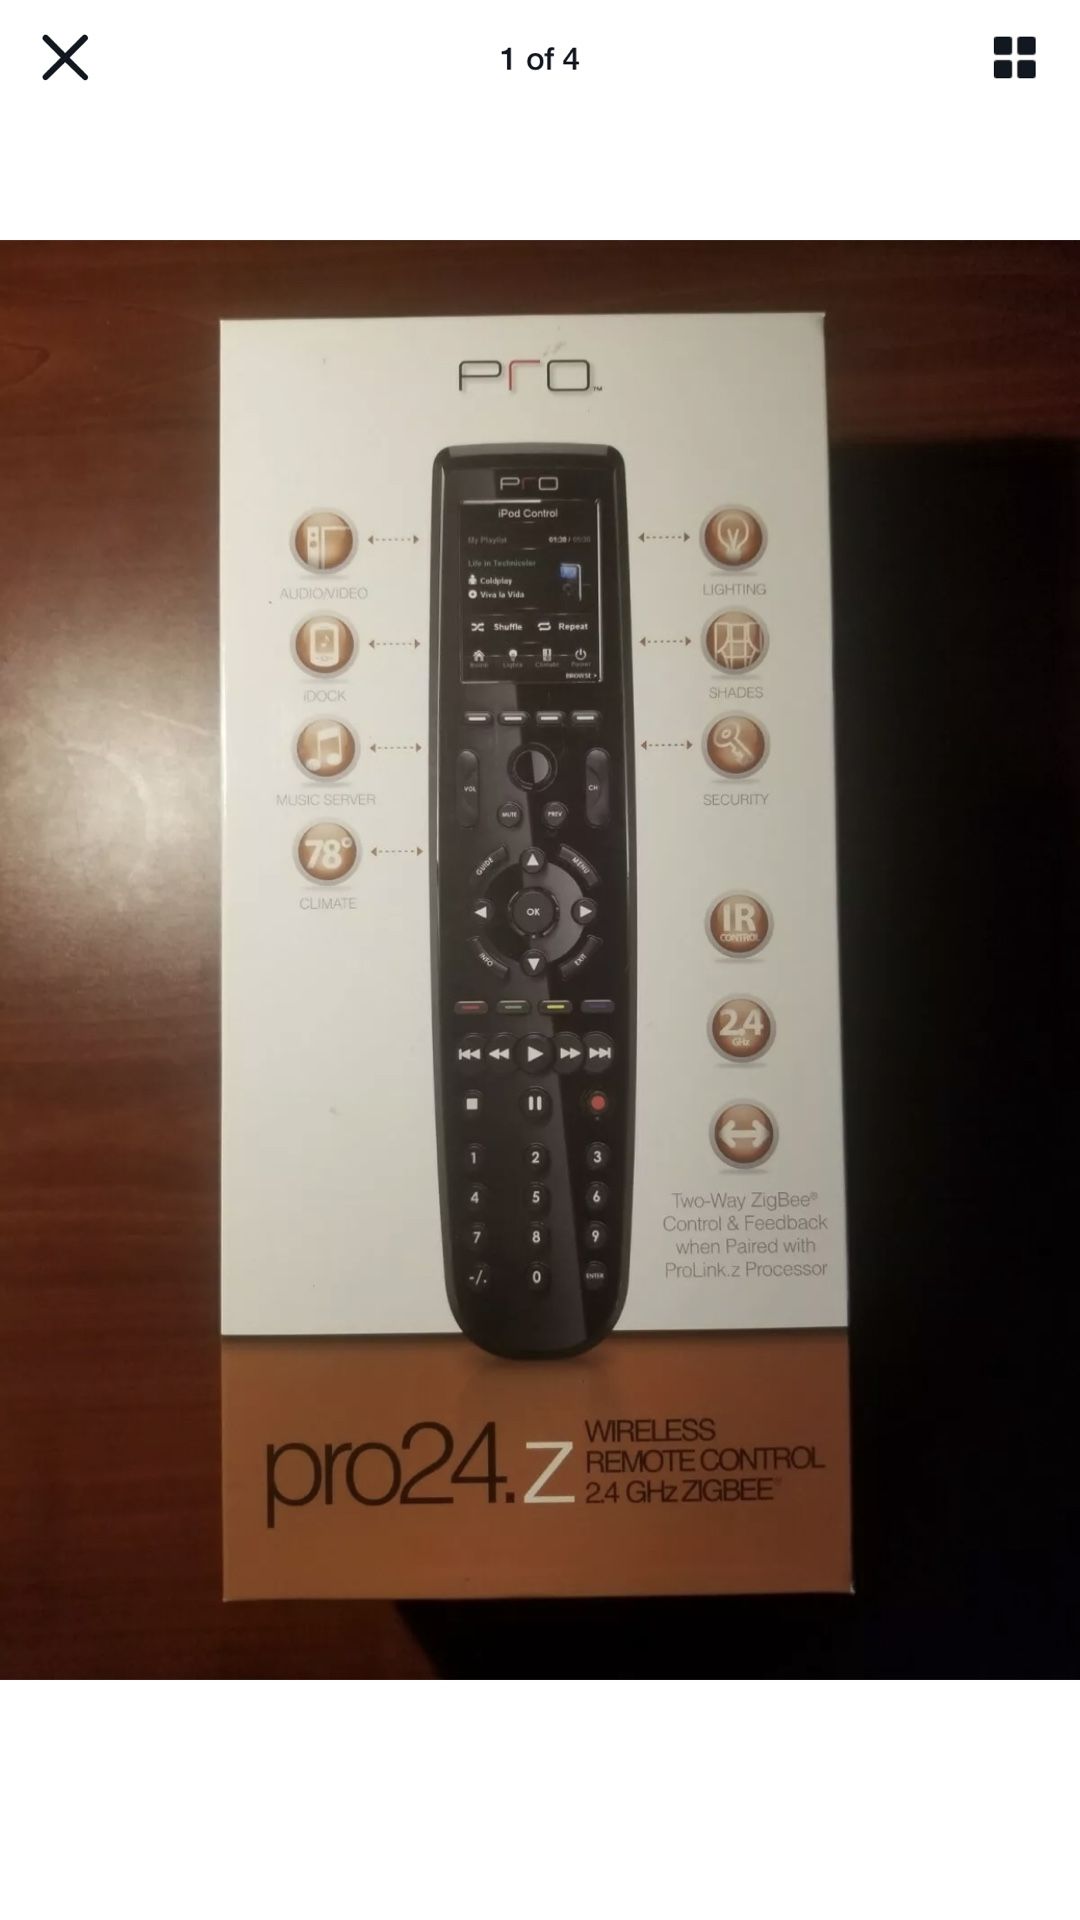 Pro Control Pro24.z Wireless 2.4GHz Zigbee Remote Control & Processor- New